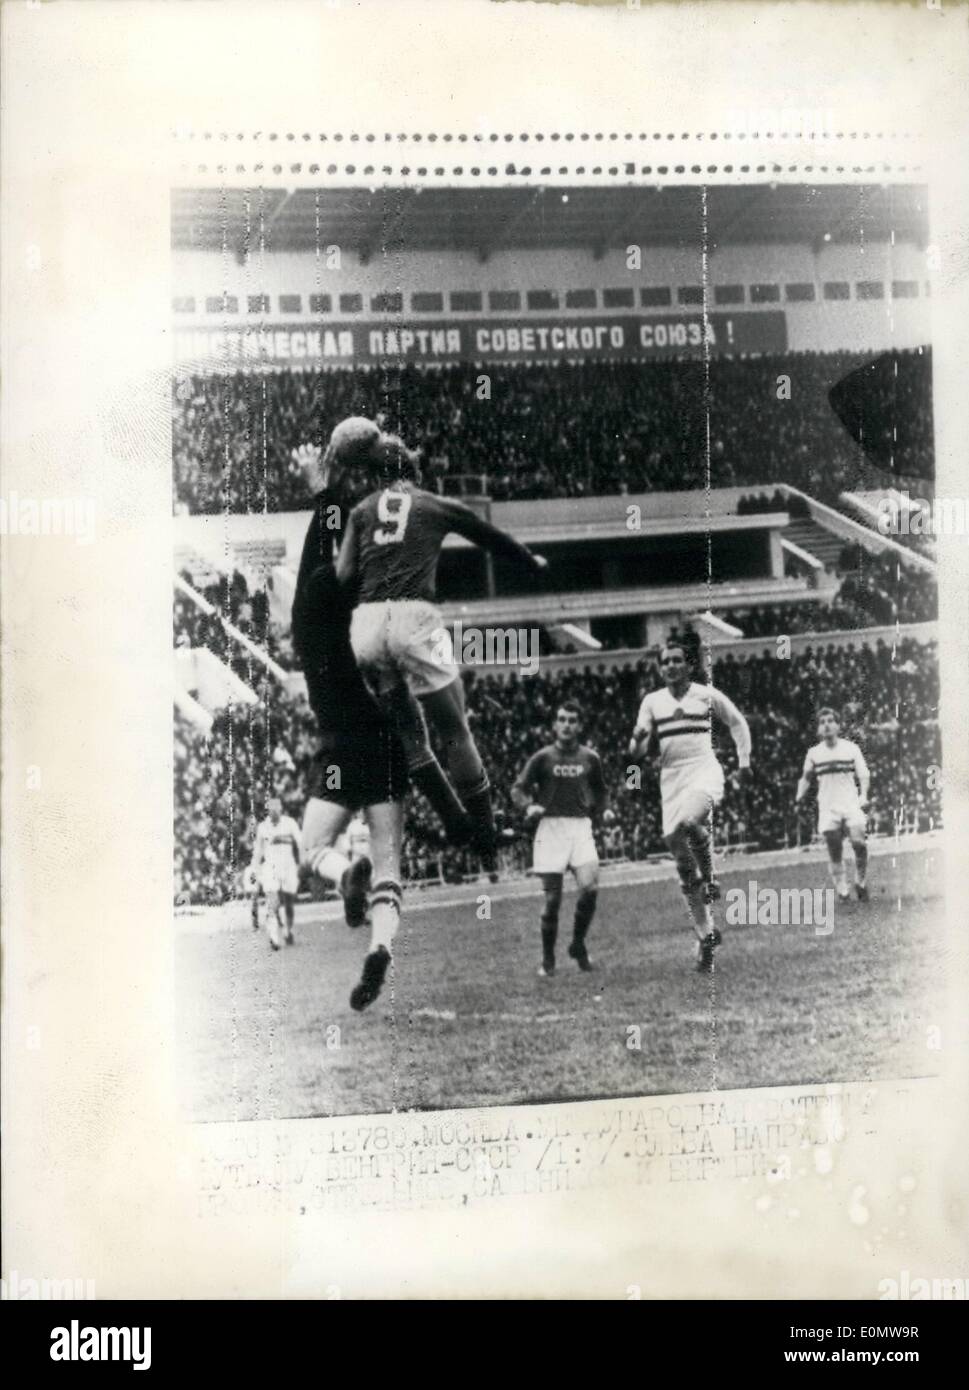 Sept. 09, 1956 - ungarischen Fußball-Nationalmannschaft gewinnt in Moskau. Fußball-Nationalmannschaft Ungarns ist es gelungen, mit einem unerwarteten 1:0-Punktestand Stockfoto